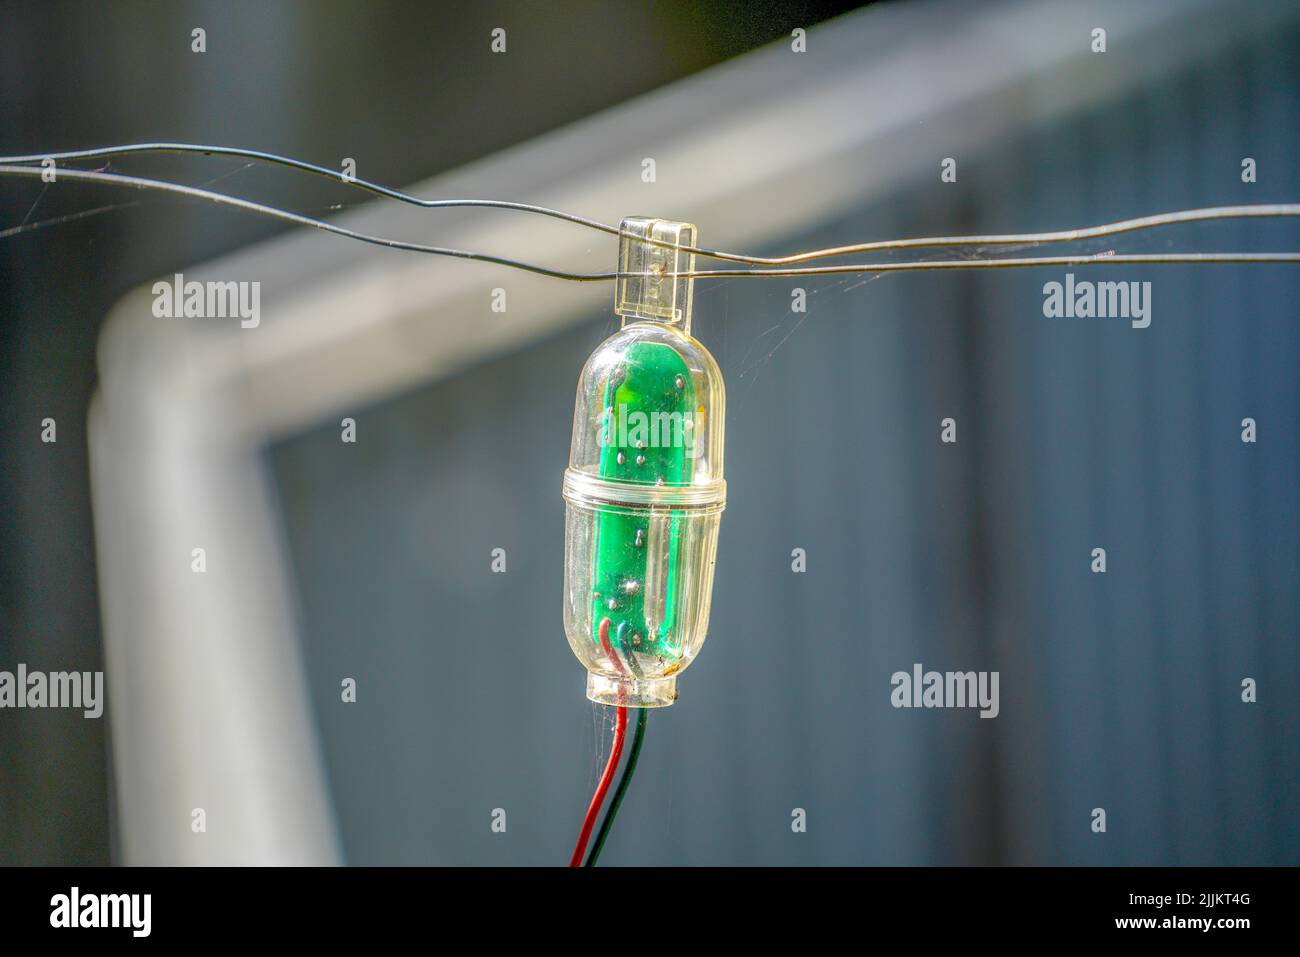 Nahaufnahme eines raffinierten Alarmsystems, das an einen Drahtzaun angeschlossen ist Stockfoto